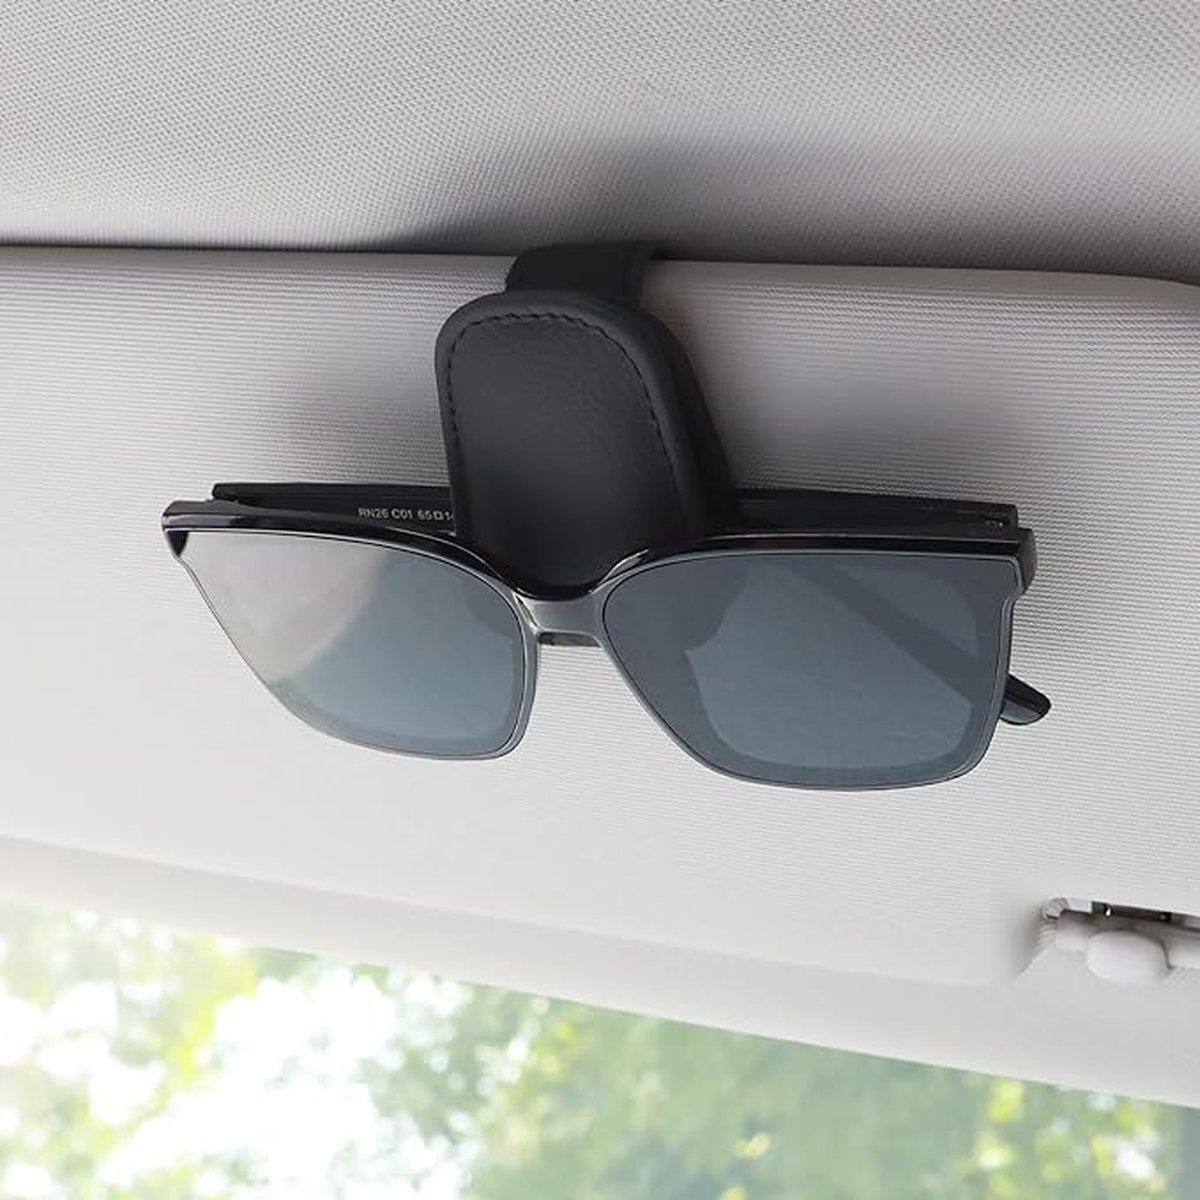 Duurzaam&Mi - Porte-lunettes de soleil pour voiture - noir - pare